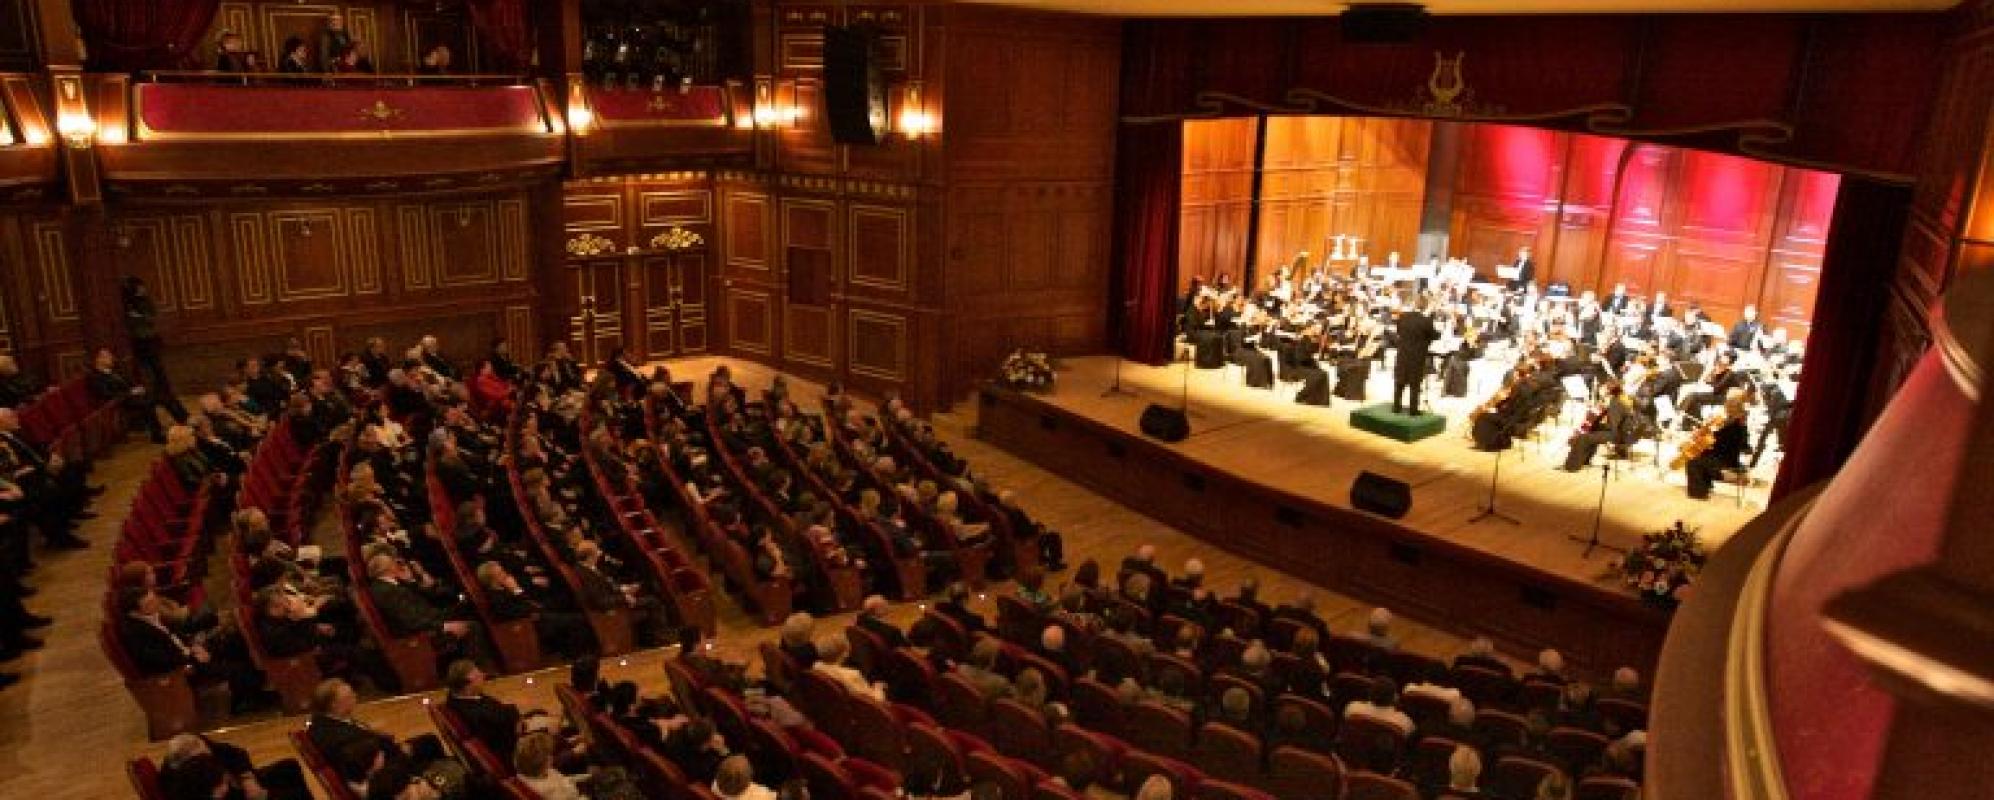 Фотографии концертного зала Большой зал Белгородской государственной филармонии